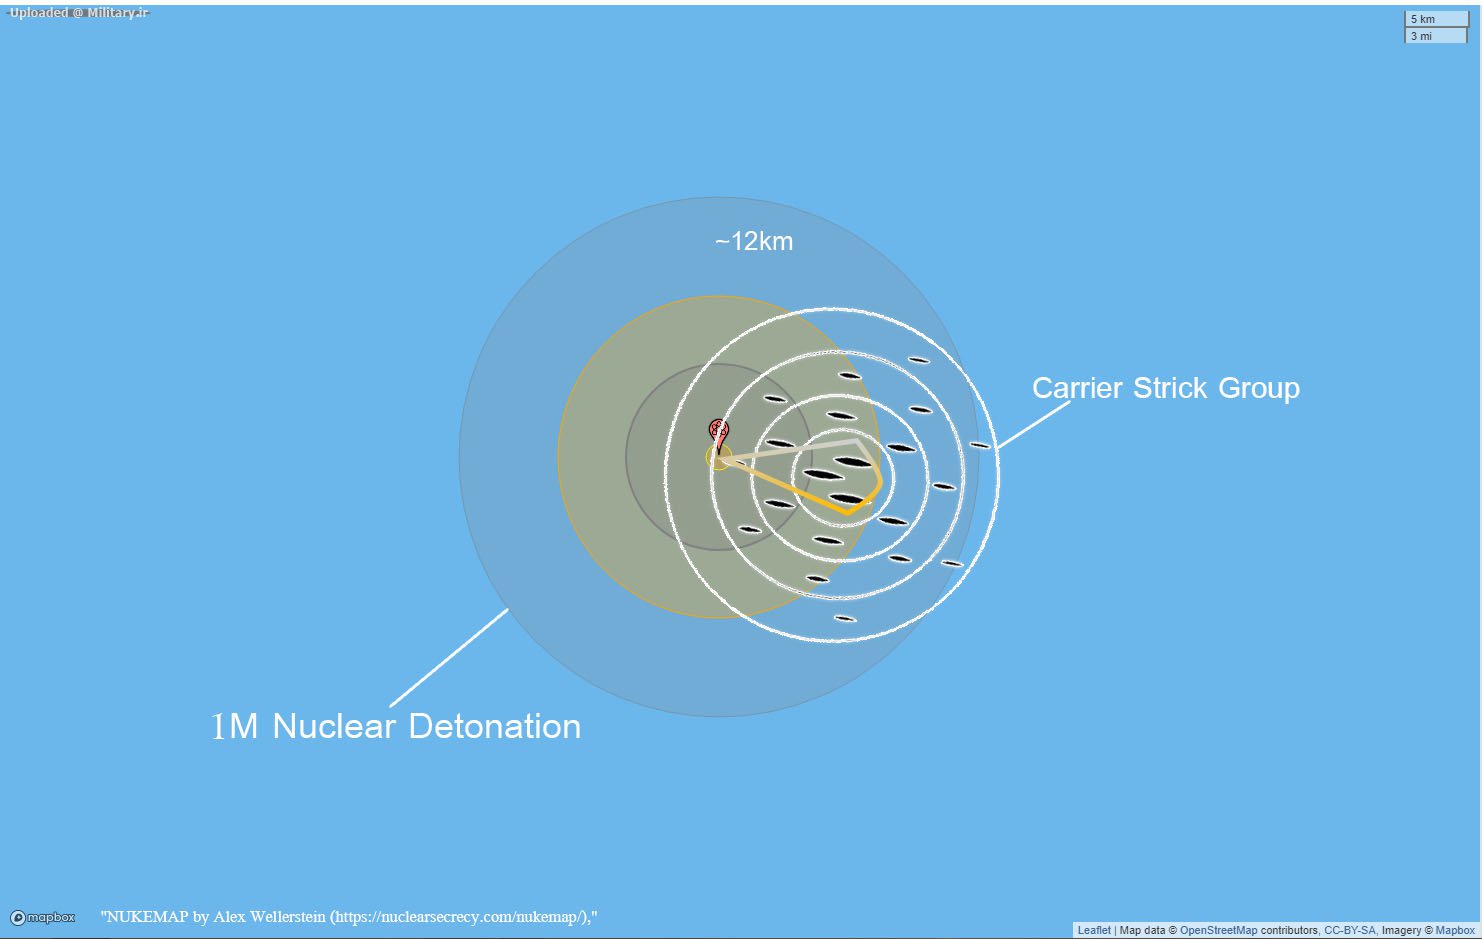 cbg-strickT_nuclear.jpg